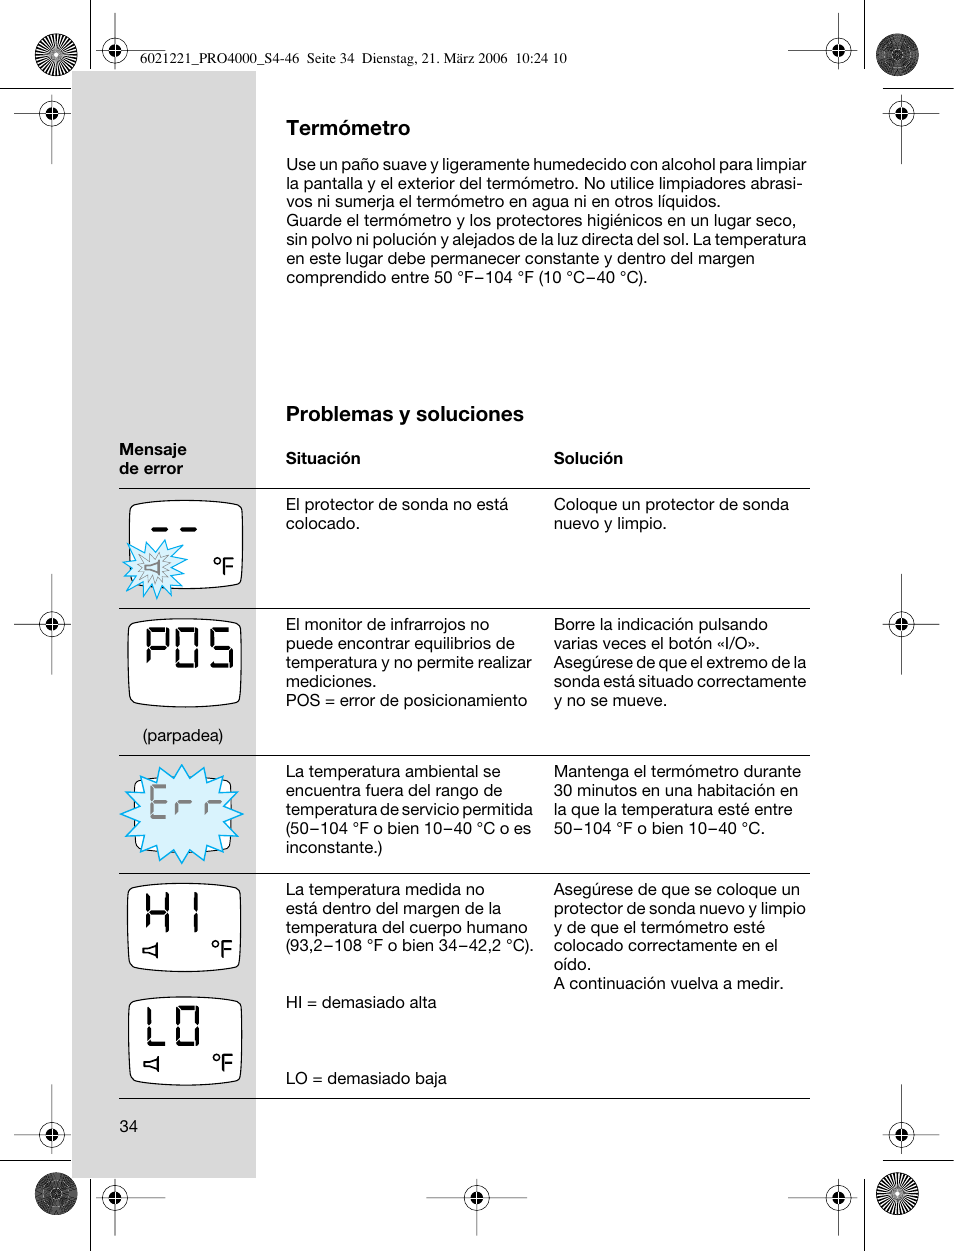 Termómetro, Problemas y soluciones | Braun ThermoScan PRO 4000 User Manual  | Page 34 / 46